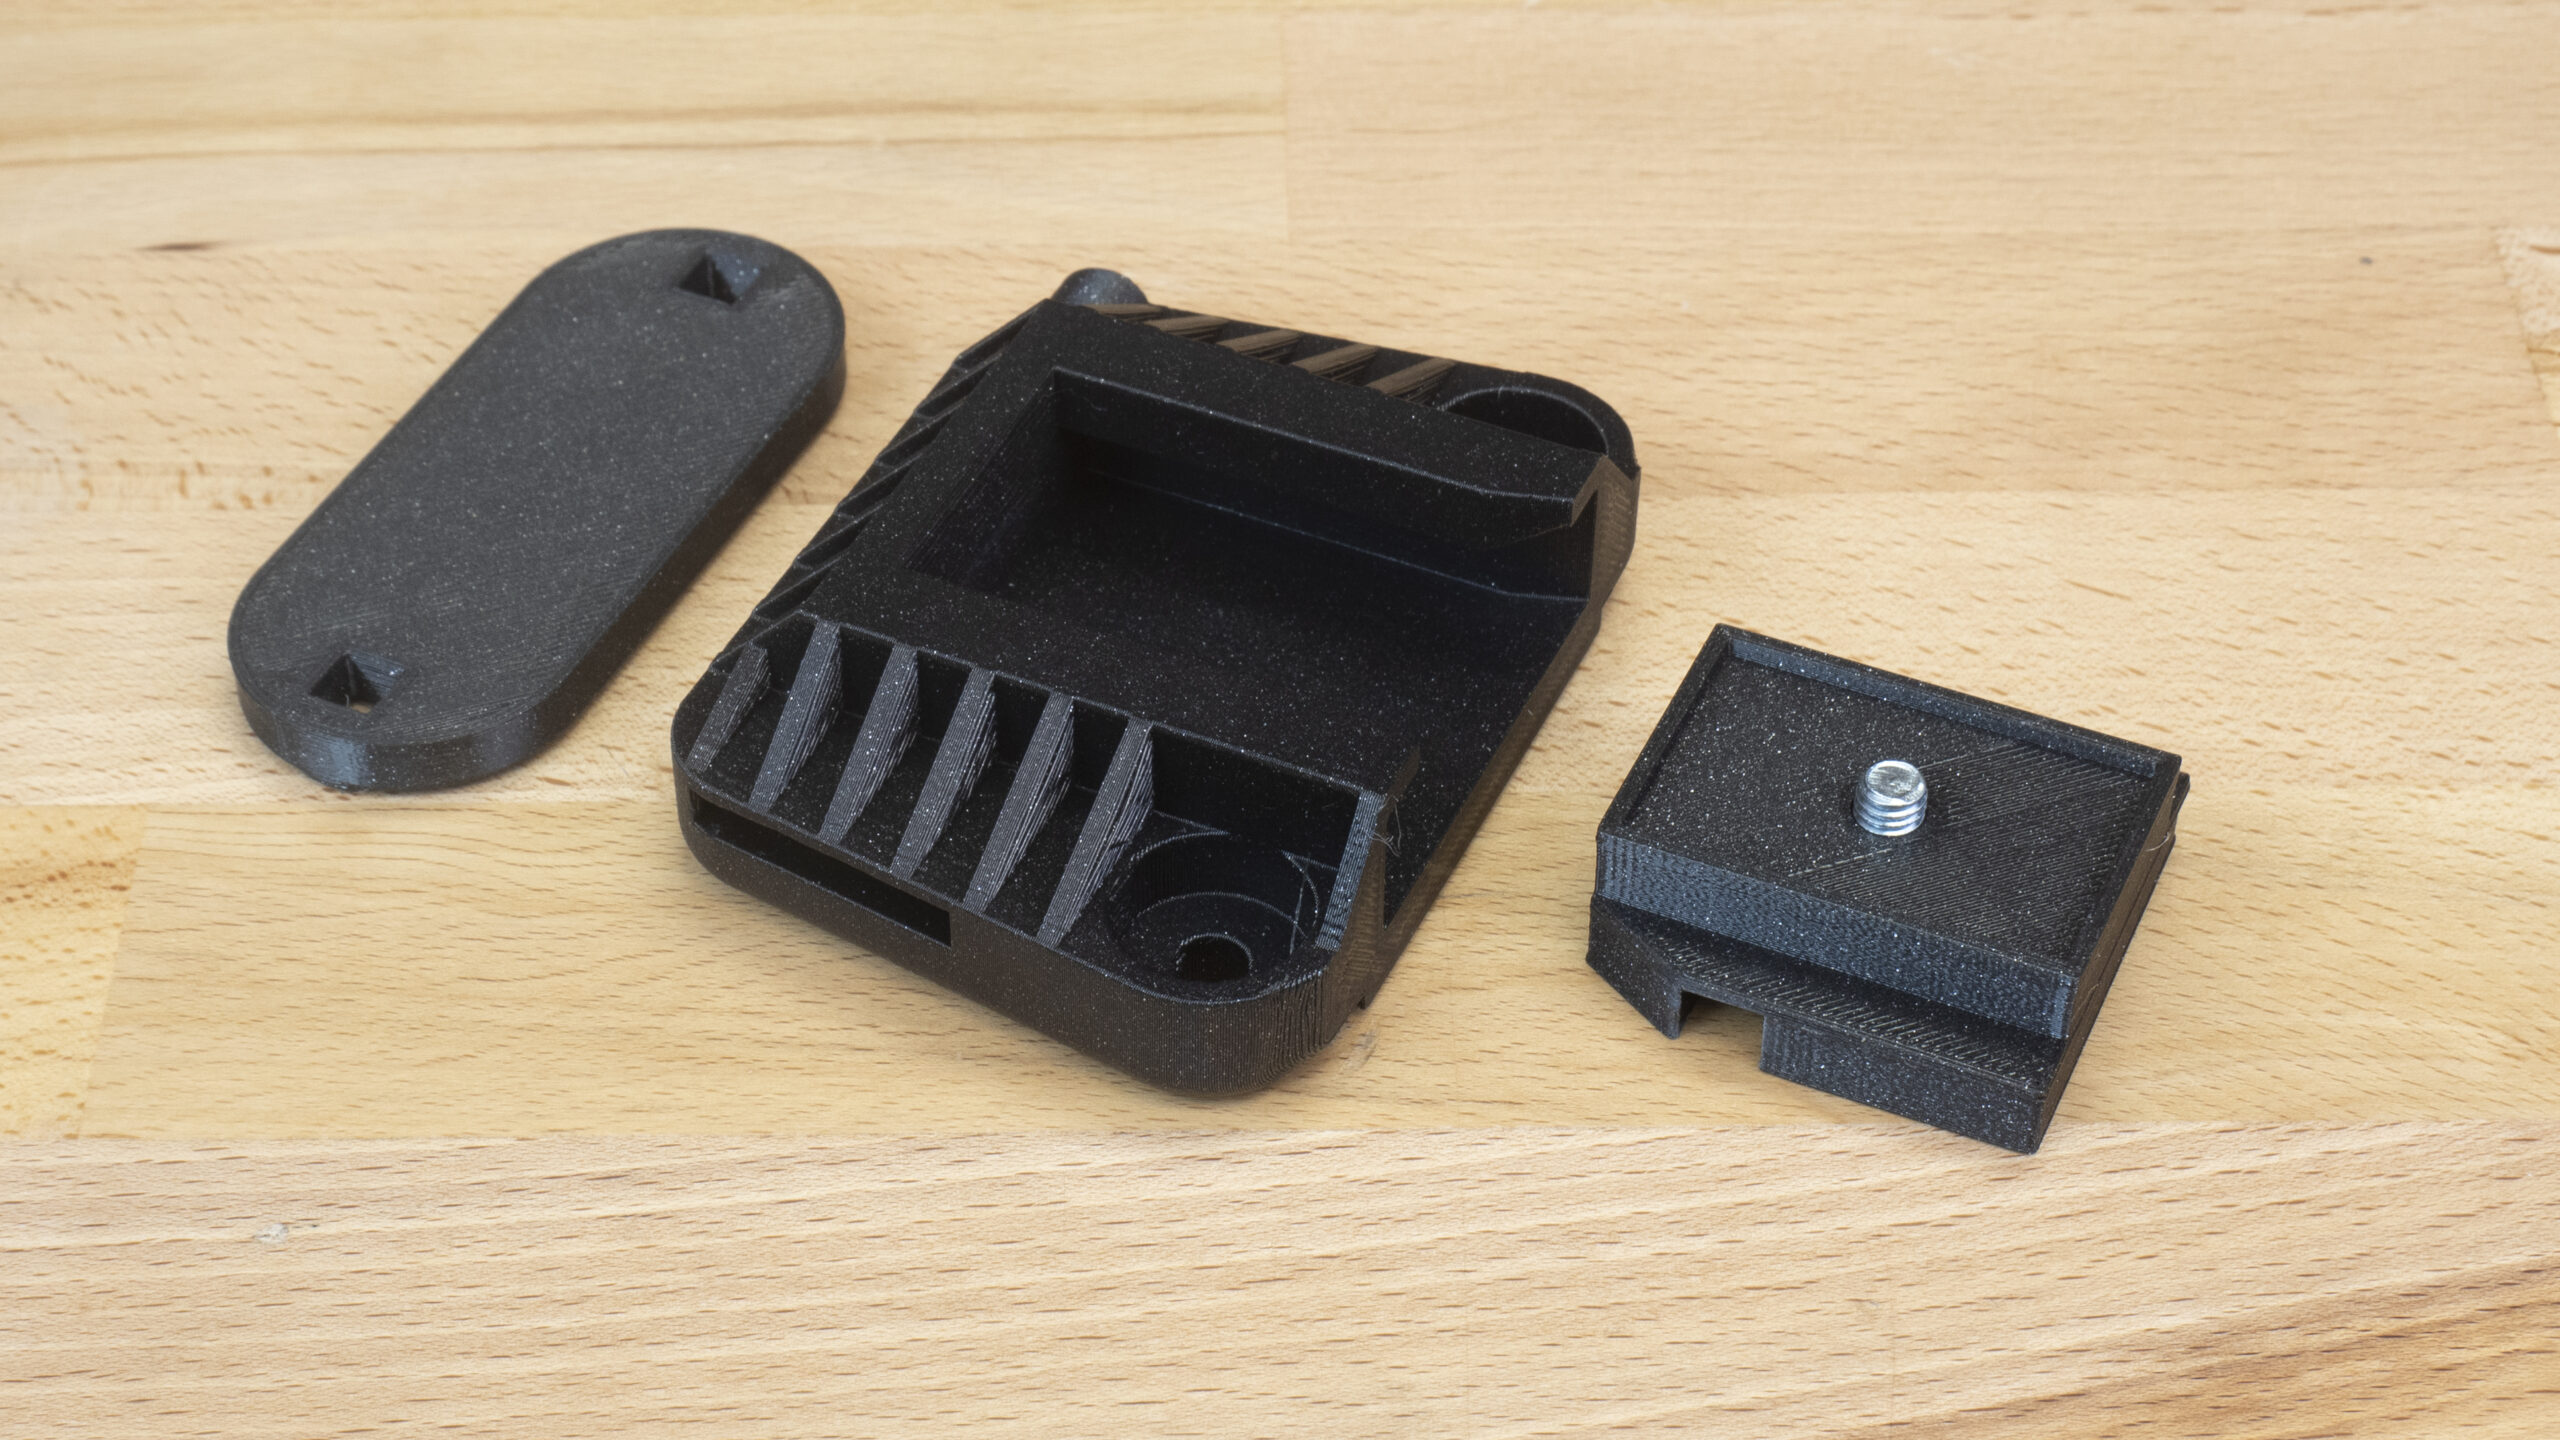 3D-printed Photo gadgets for everyone - Original Prusa 3D Printers